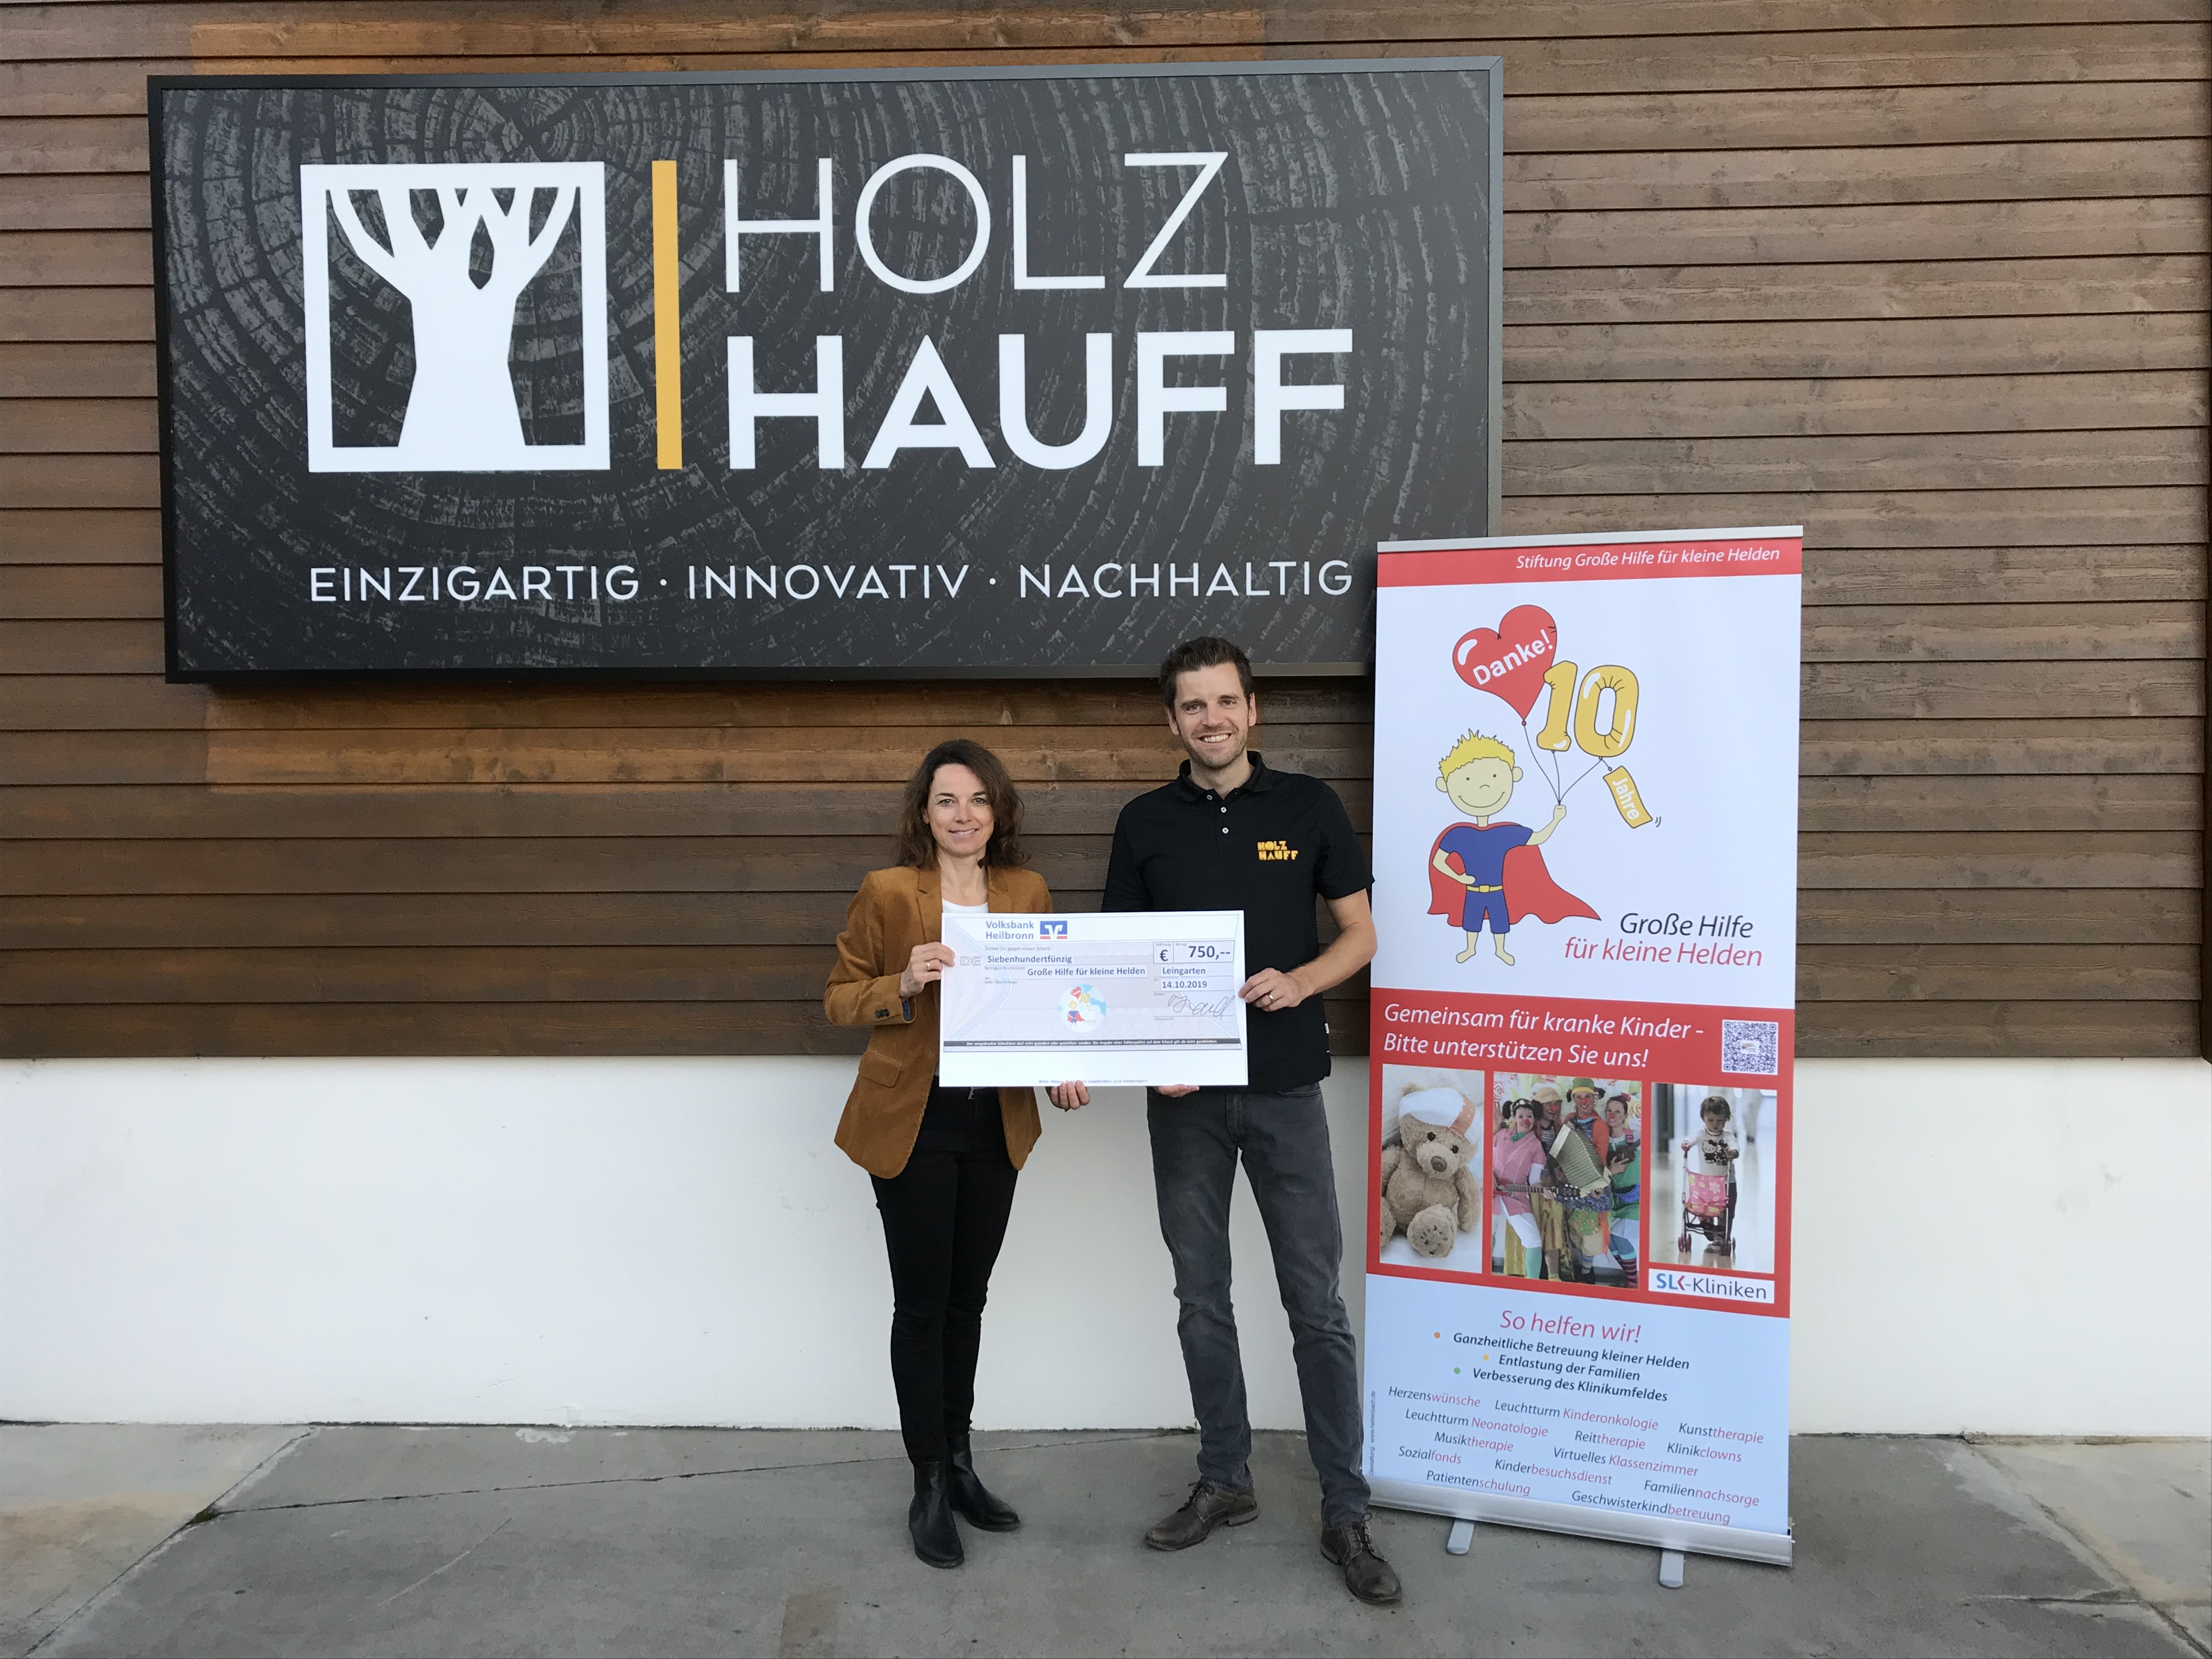 Spendenübergabe Große Hilfe für kleine Helden bei Holz-Hauff GmbH in Leingarten